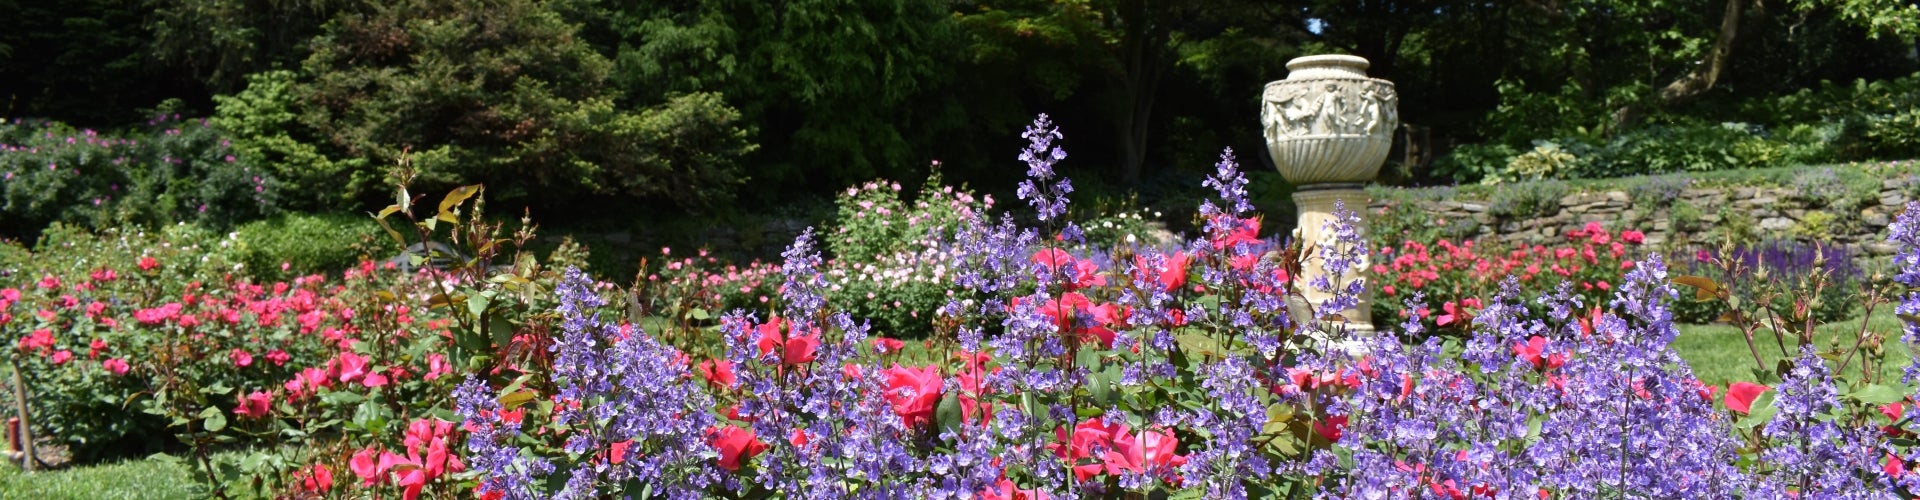 Rose Garden  Morris Arboretum & Gardens